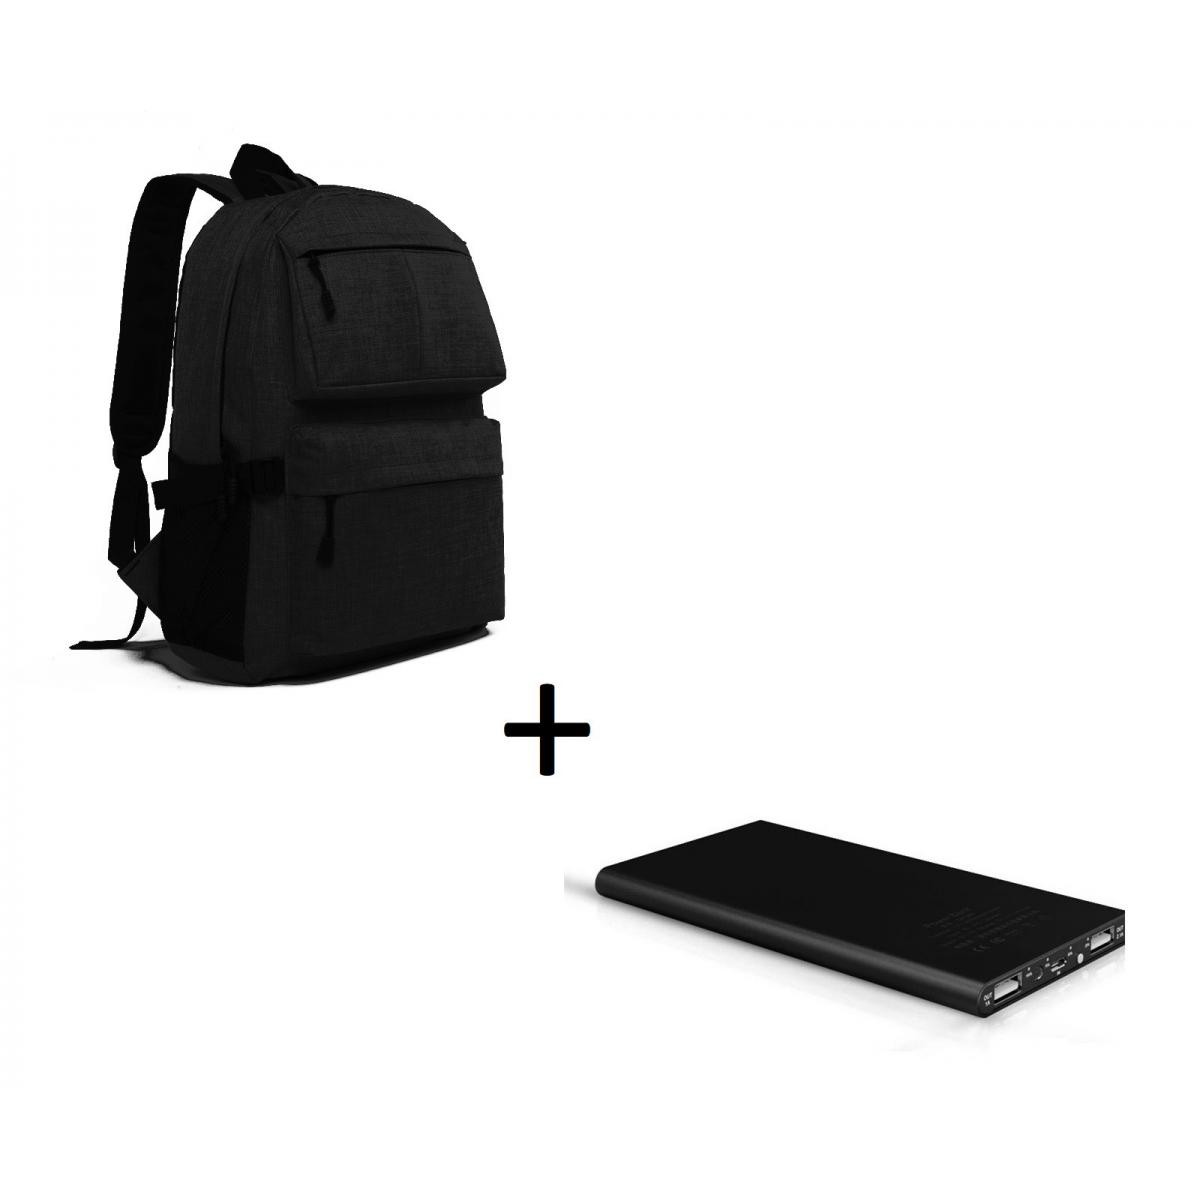 Shot - Pack pour "WIKO View 5 Plus" Smartphone (Batterie Plate 6000 mAh 2 ports + Sac à dos avec prise USB integre) (NOIR) - Chargeur secteur téléphone